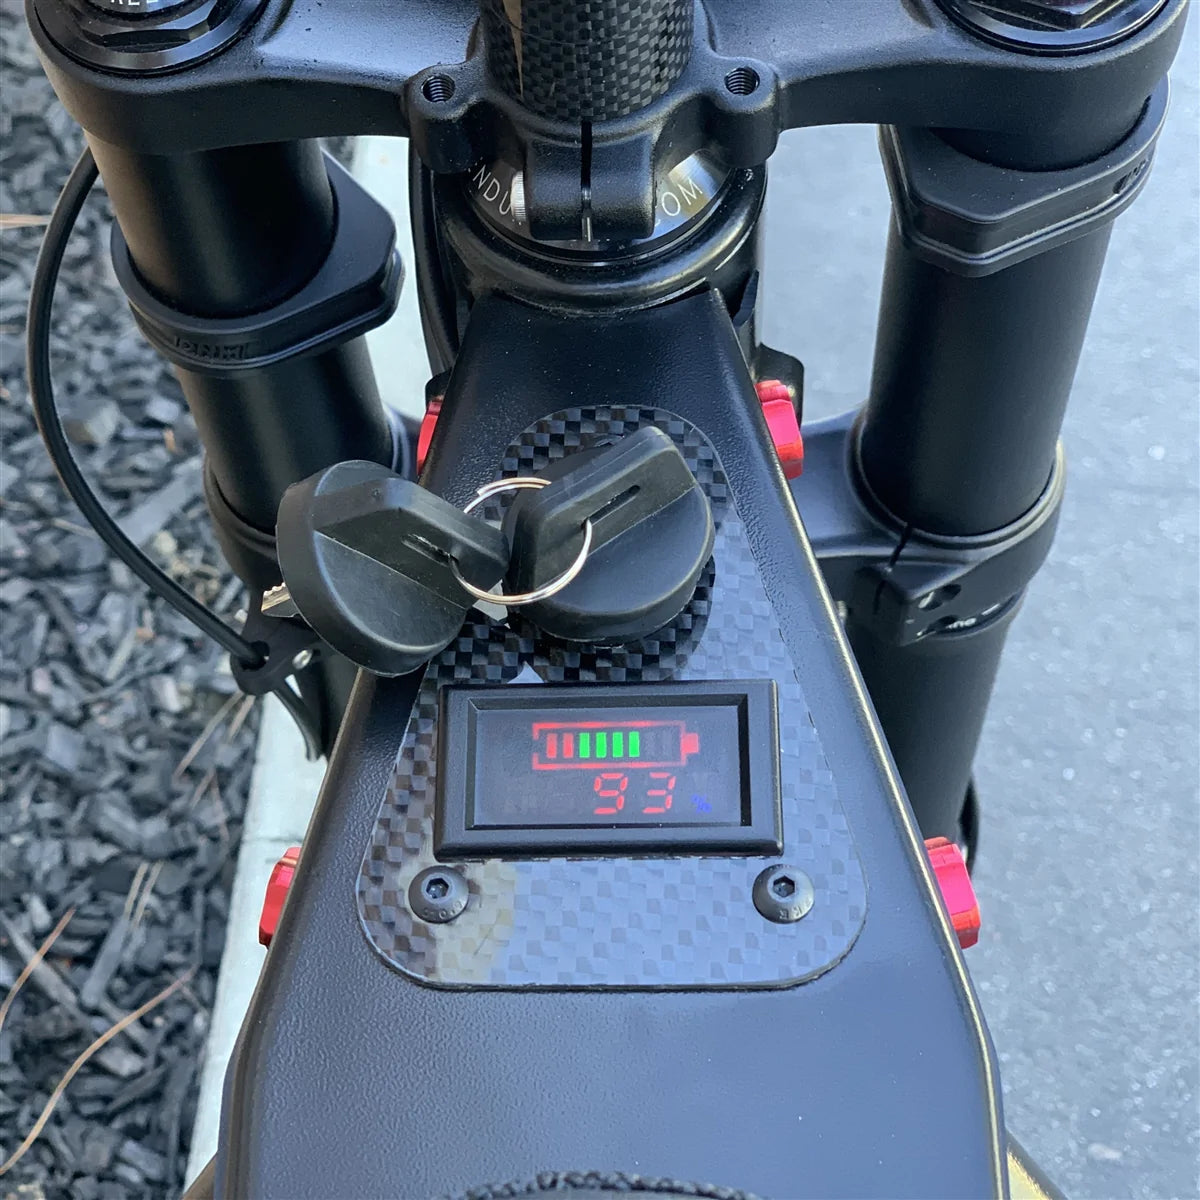 R&D - Cab Recon, le vélo électrique aussi performant qu'une petite moto !